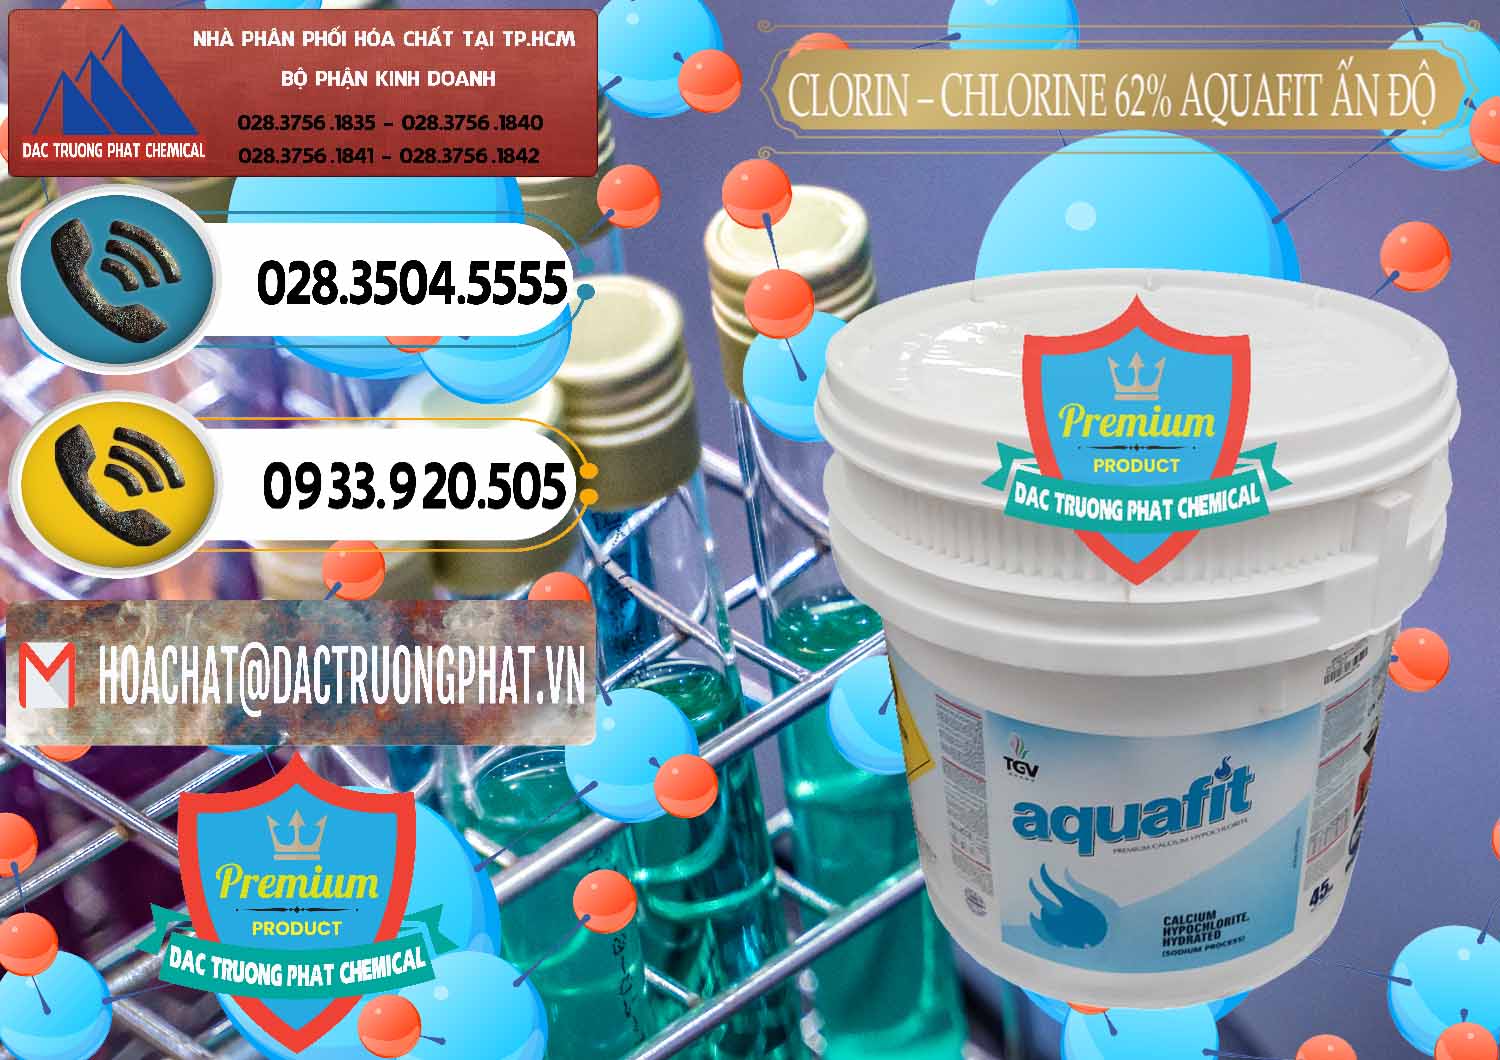 Cty chuyên cung ứng ( bán ) Clorin - Chlorine 62% Aquafit Thùng Lùn Ấn Độ India - 0057 - Công ty phân phối và cung ứng hóa chất tại TP.HCM - hoachatdetnhuom.vn